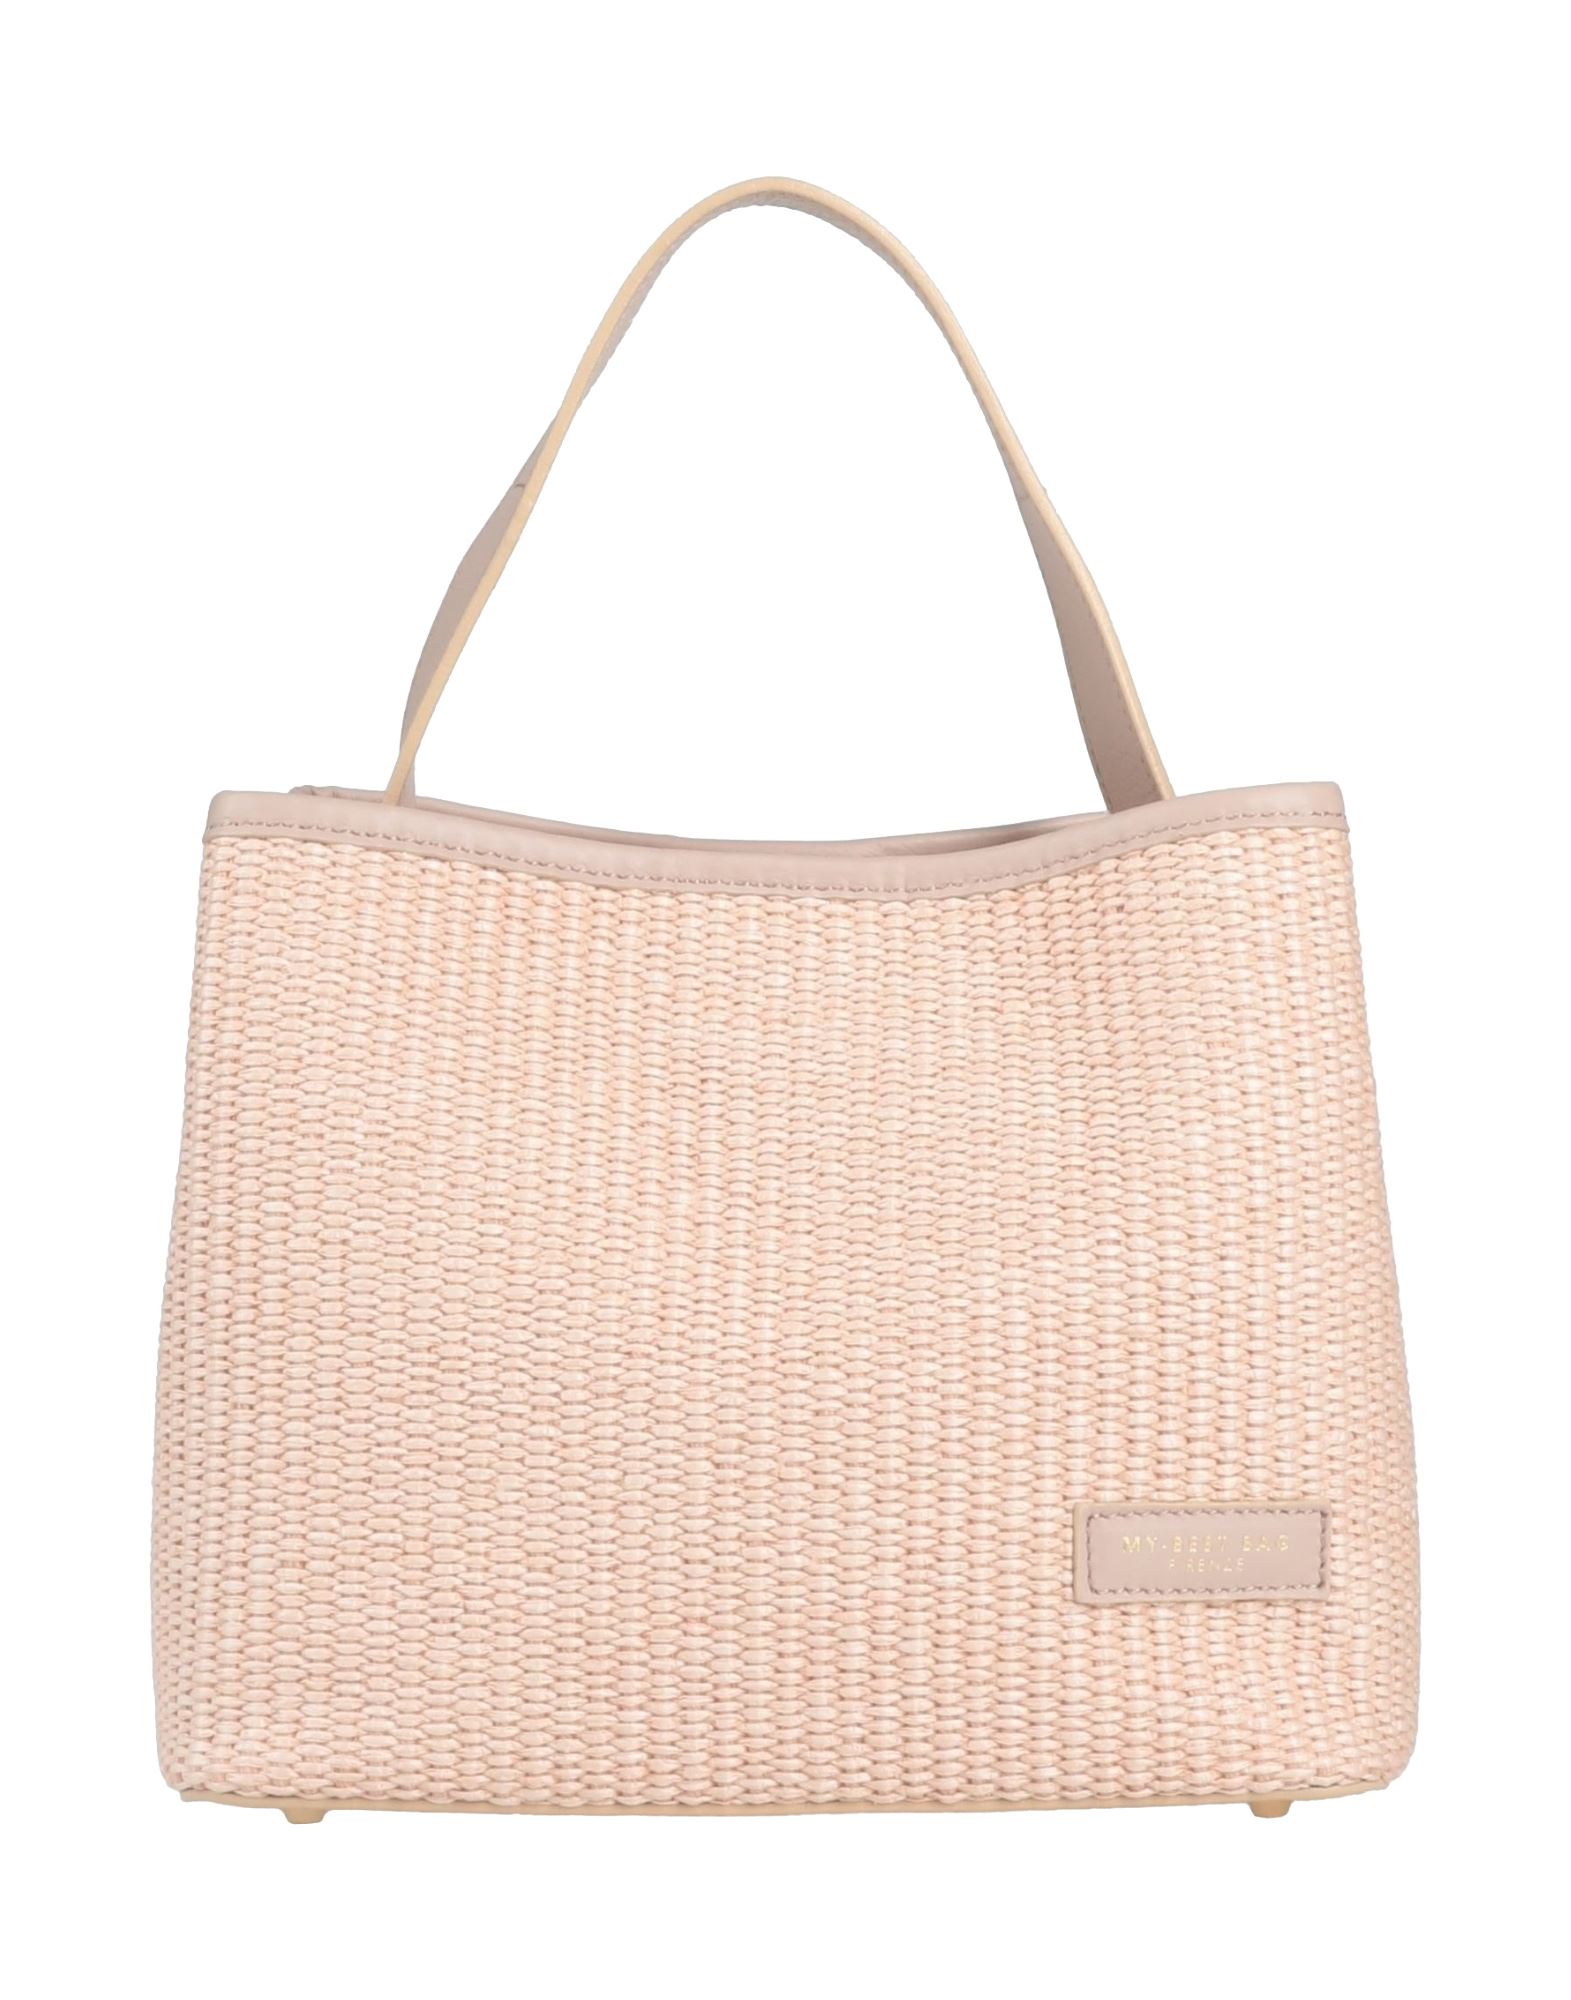 My-best Bags Handbags In Pink